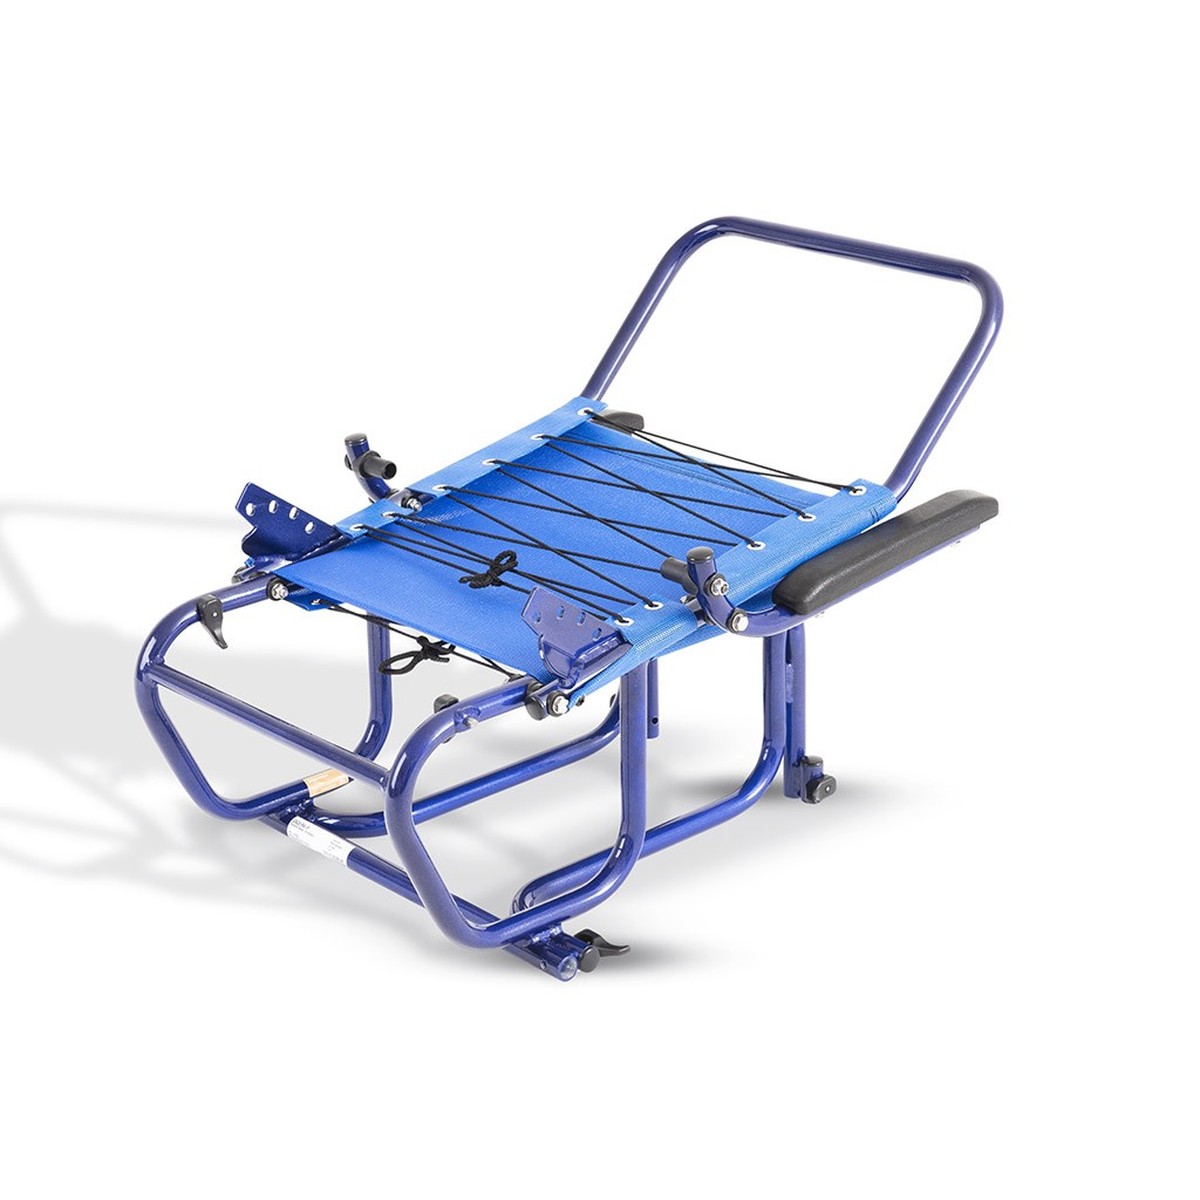 Foto do produto Cadeira de Rodas Ipanema até 110 kg